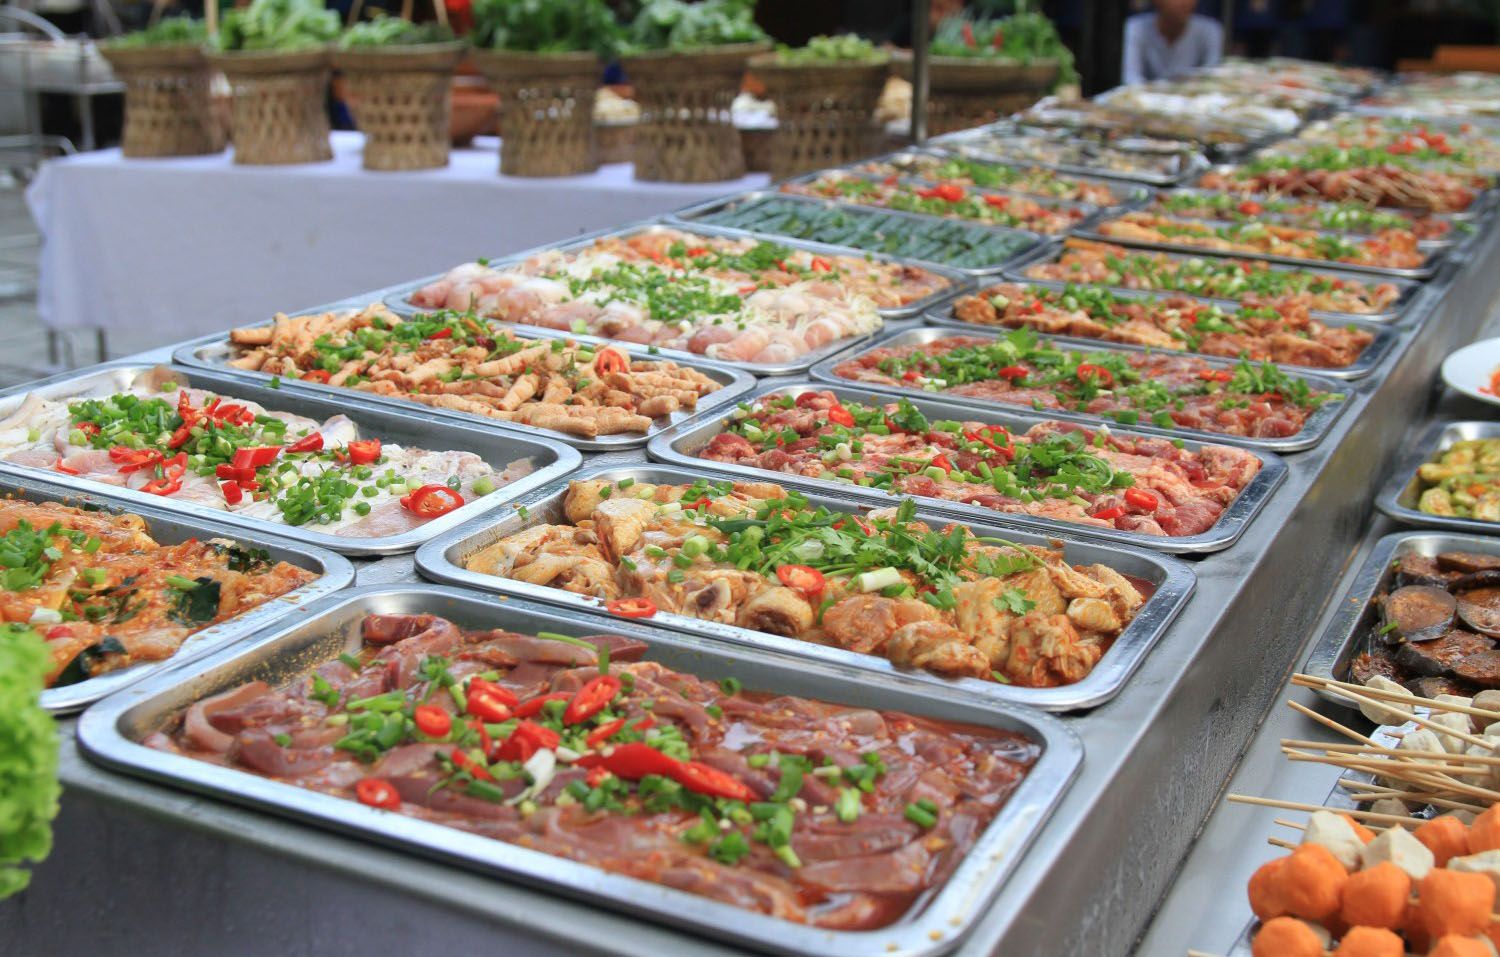 Hun Khói - Buffet Nướng Tự Chọn - Nguyễn Hoàng ở Quận Hải Châu, Đà Nẵng | Foody.vn